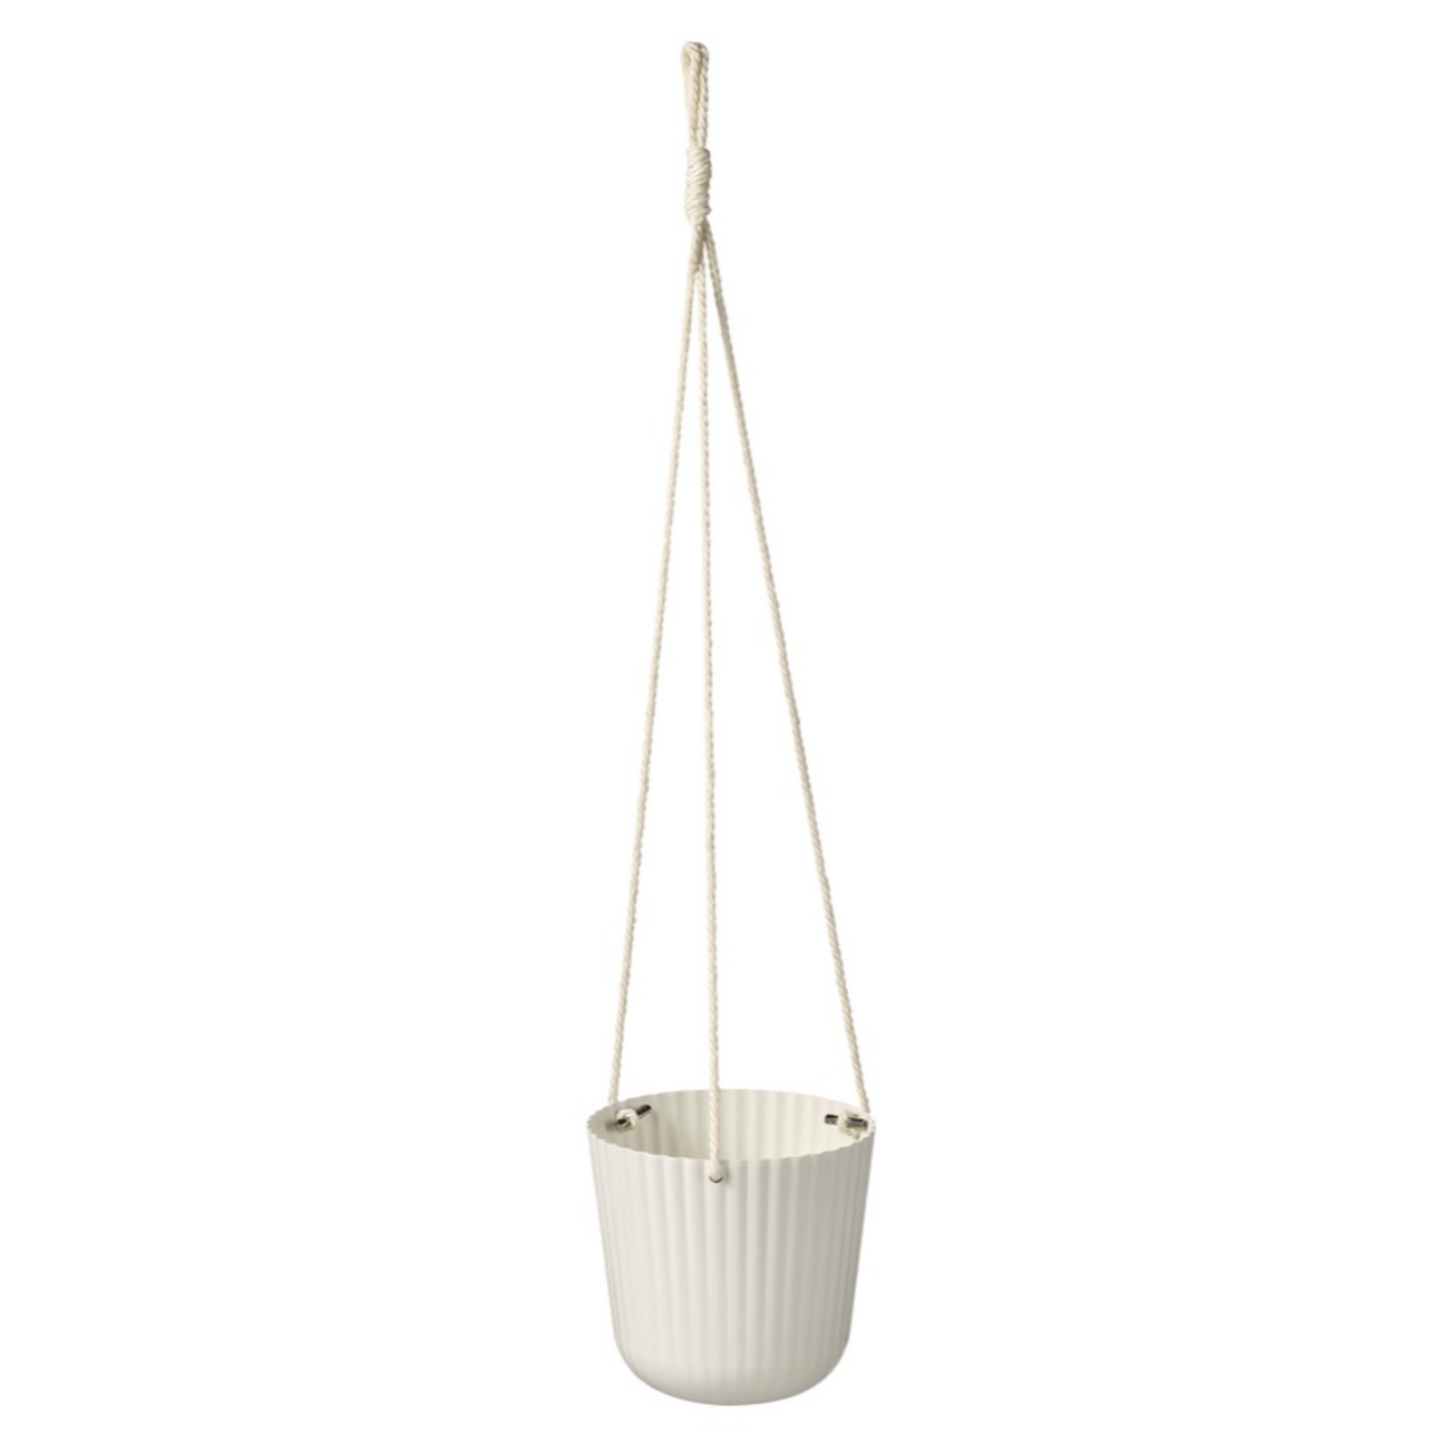 IKEA Appelros Hanging Plant Pot 12cm, White (6638726381633)